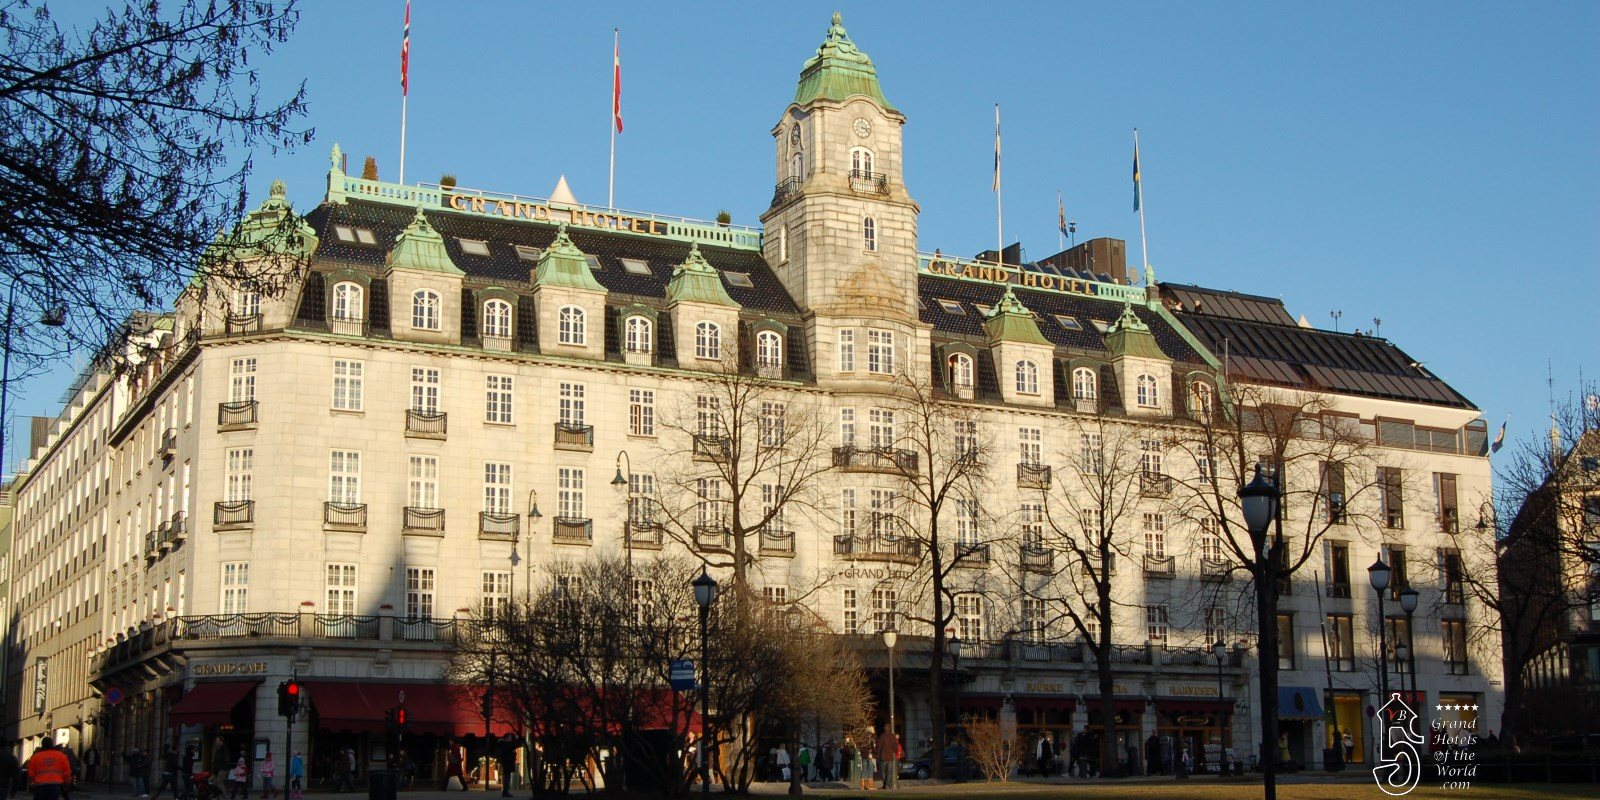 Grand Hotel in Oslo